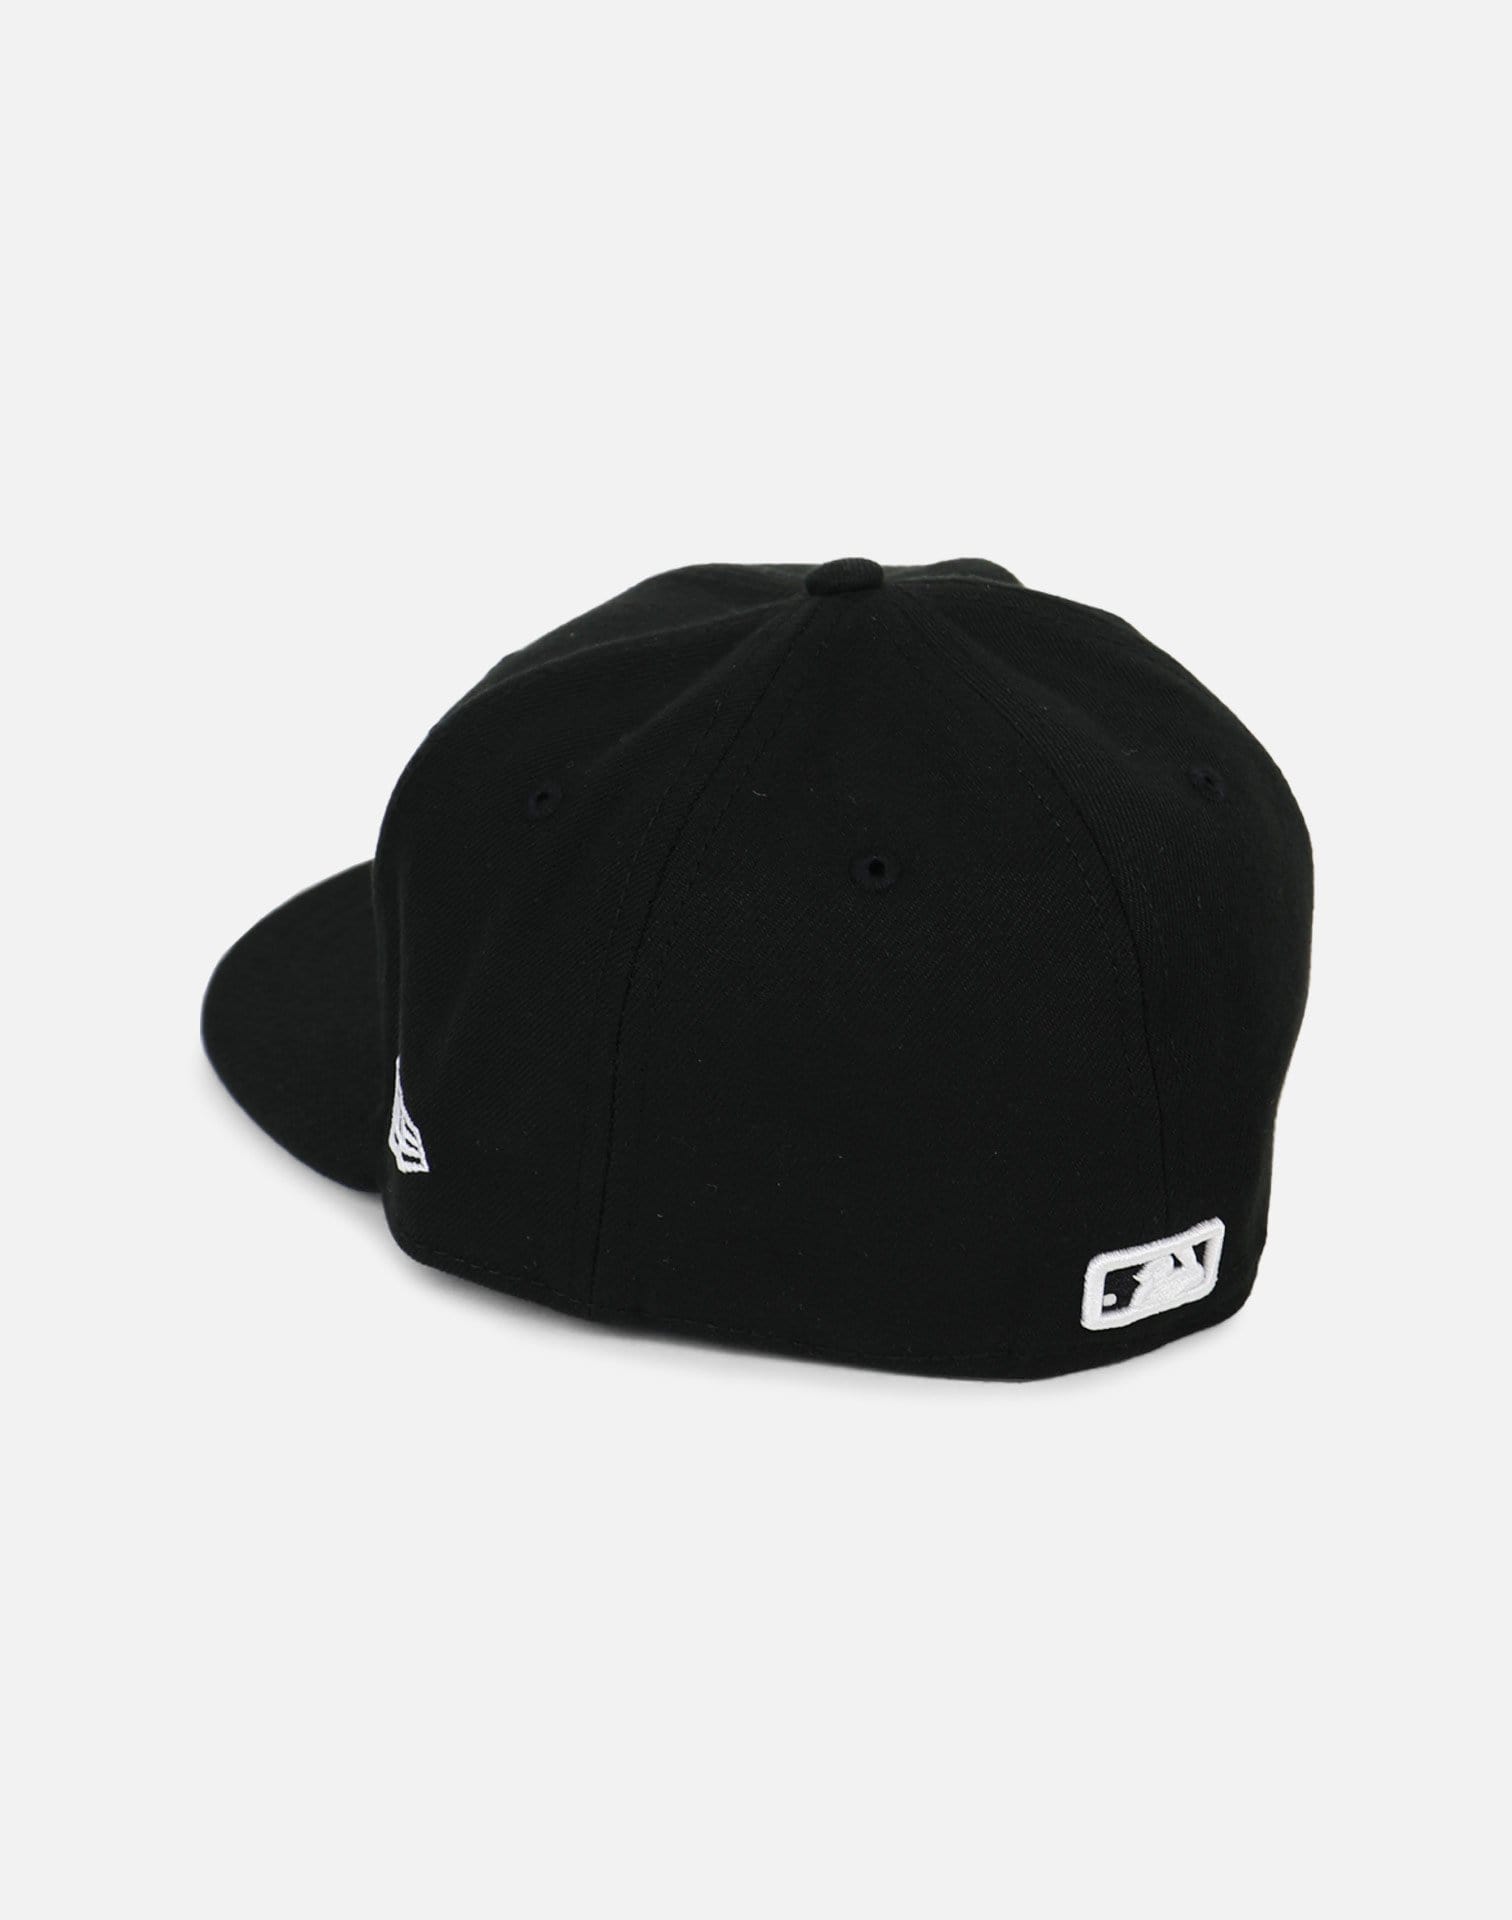 New Era Minnesota Twins Black Fitted Hat